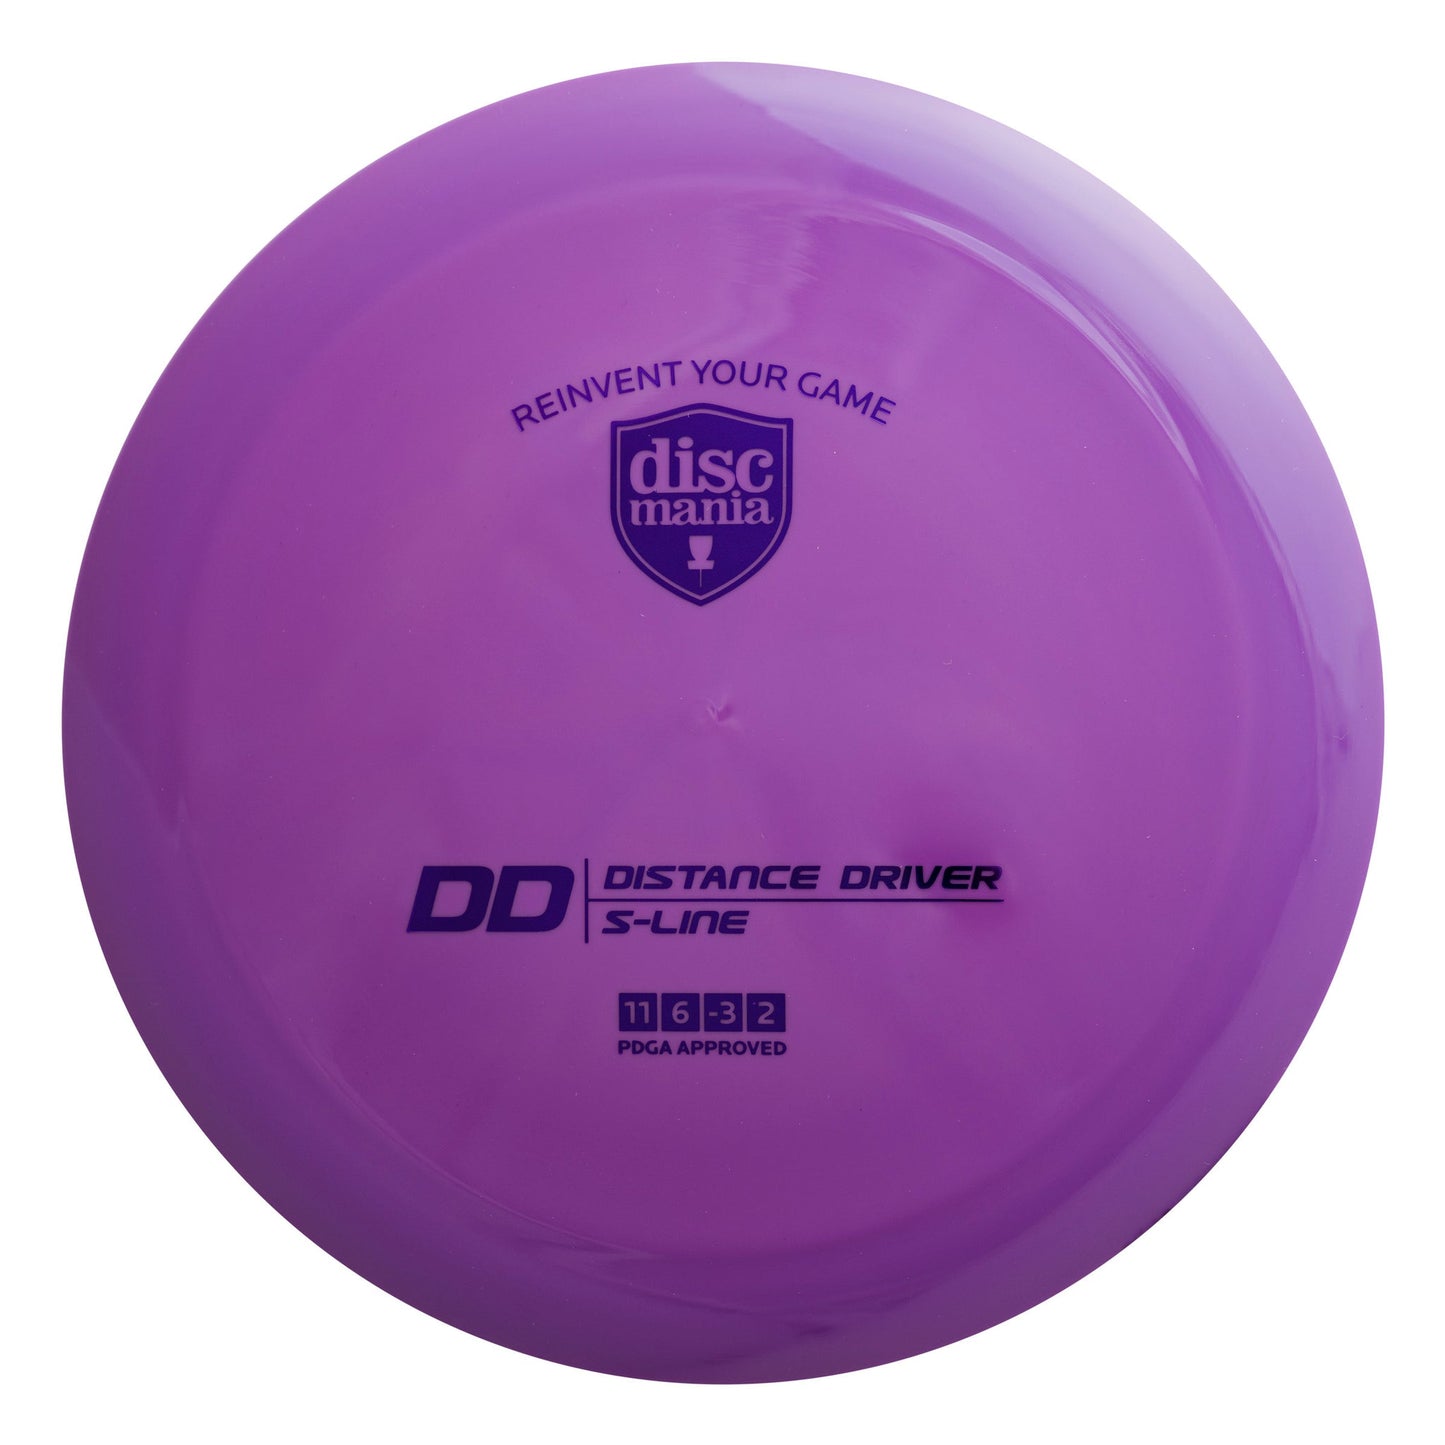 Discmania S-Line DD Disc